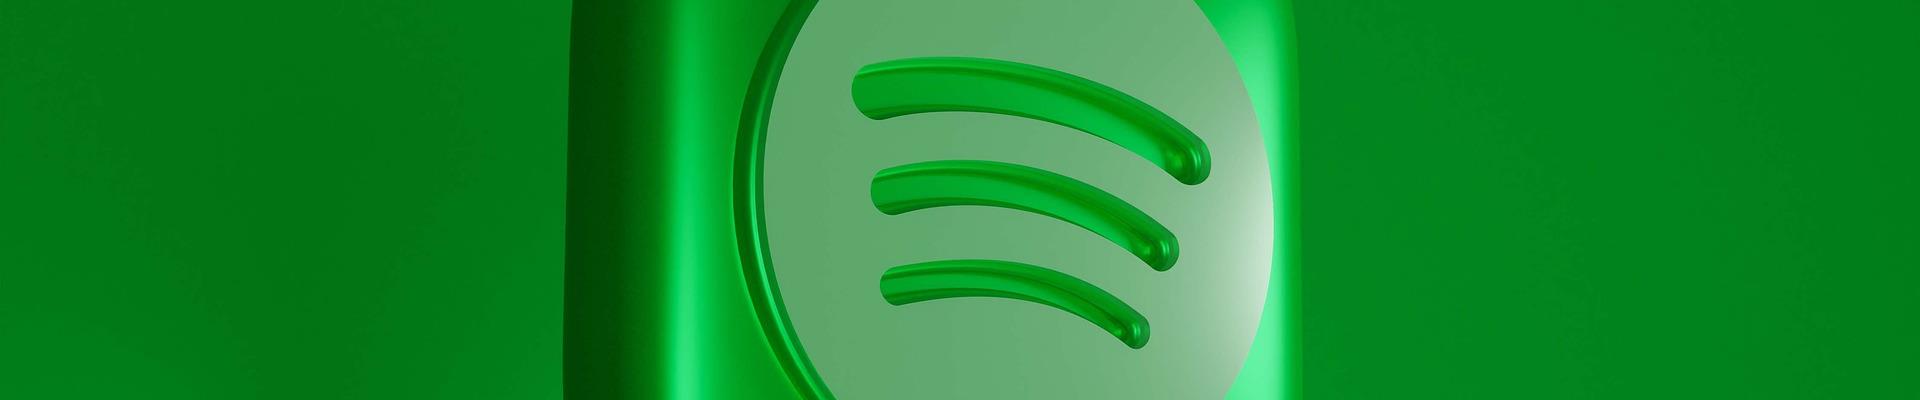 Spotify faz parceria com Roku para exibir campanha em vídeo